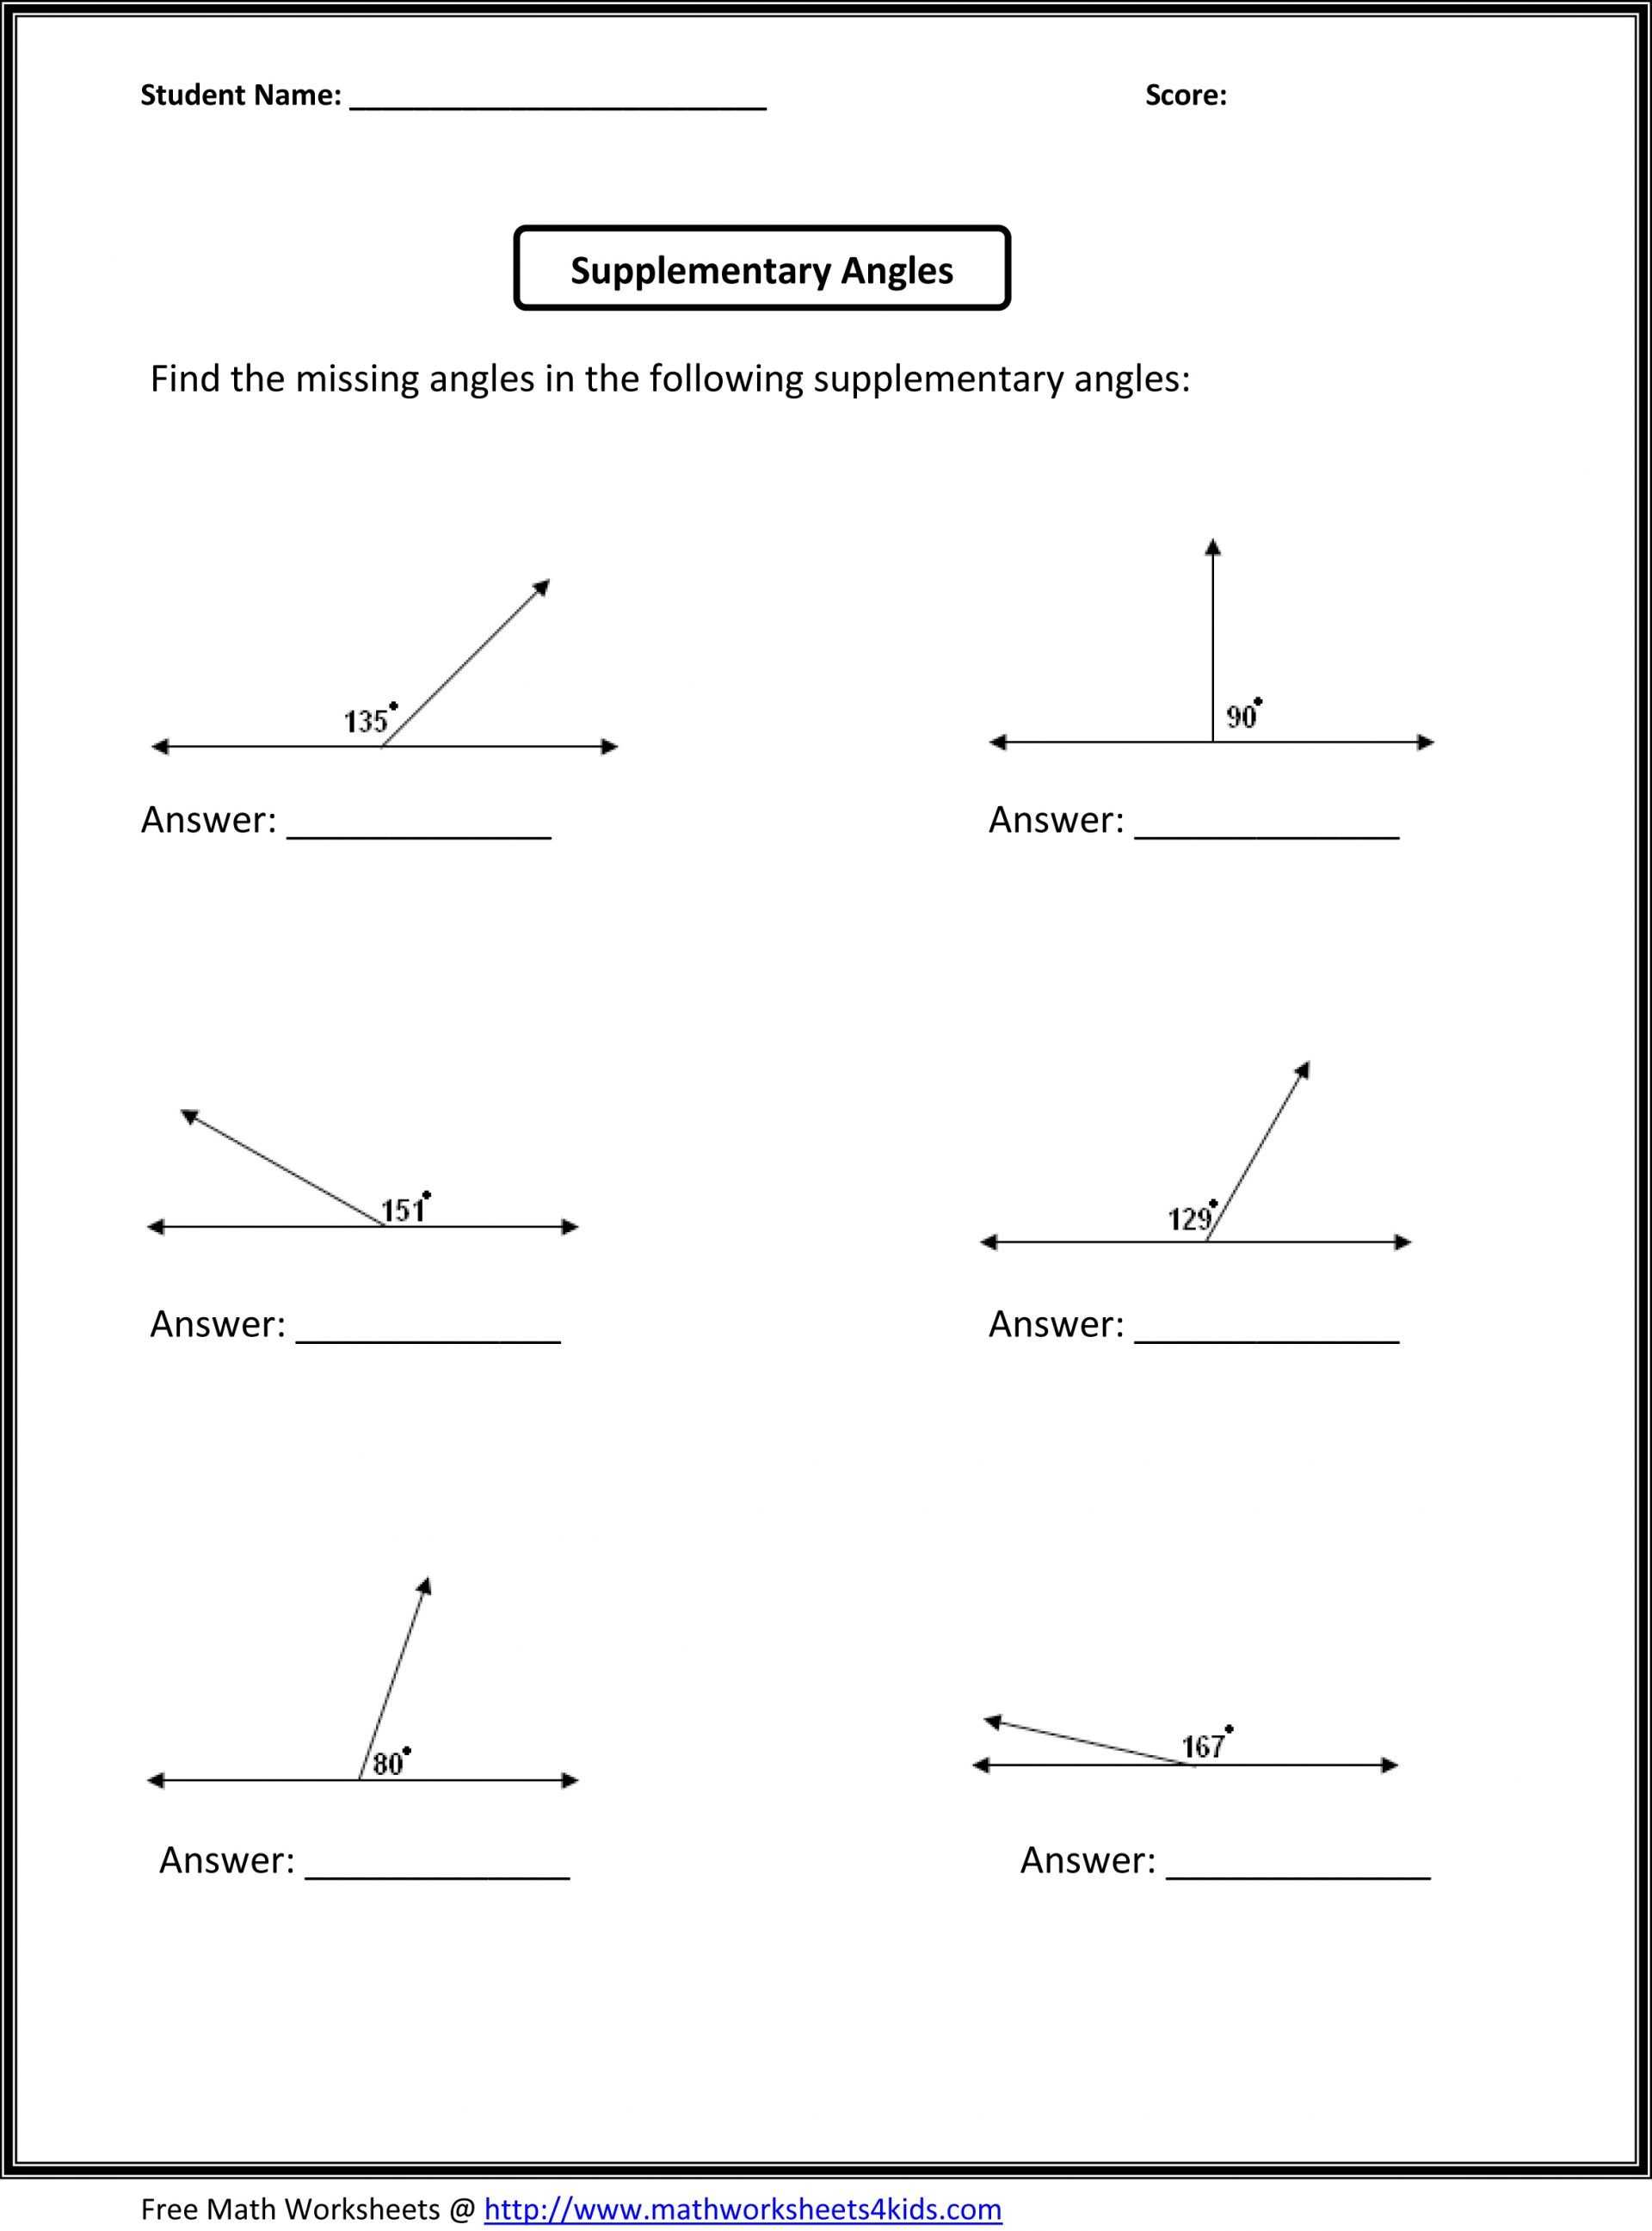 Free Printable 7th Grade Math Worksheets Along with Math Worksheets for 7th Grade Exponents Valid 11th Grade Math